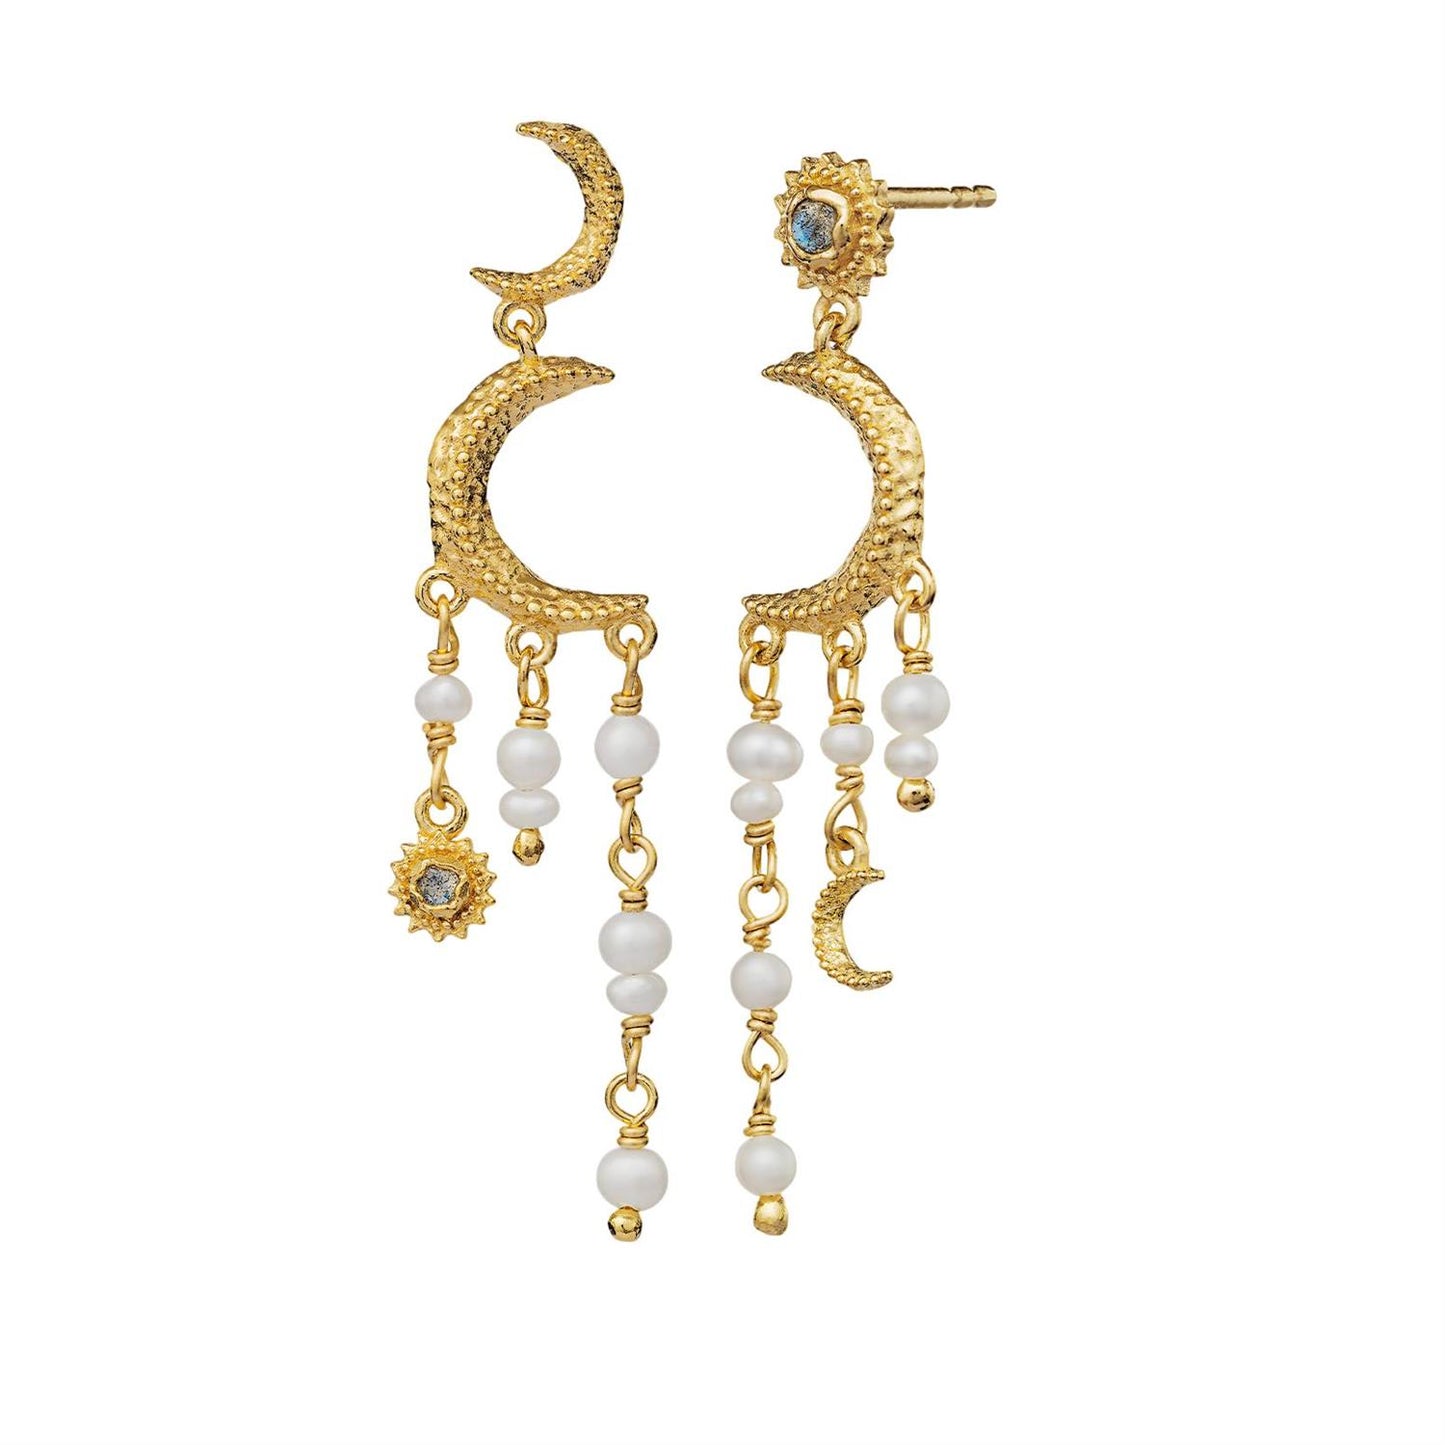 Astrea earrings